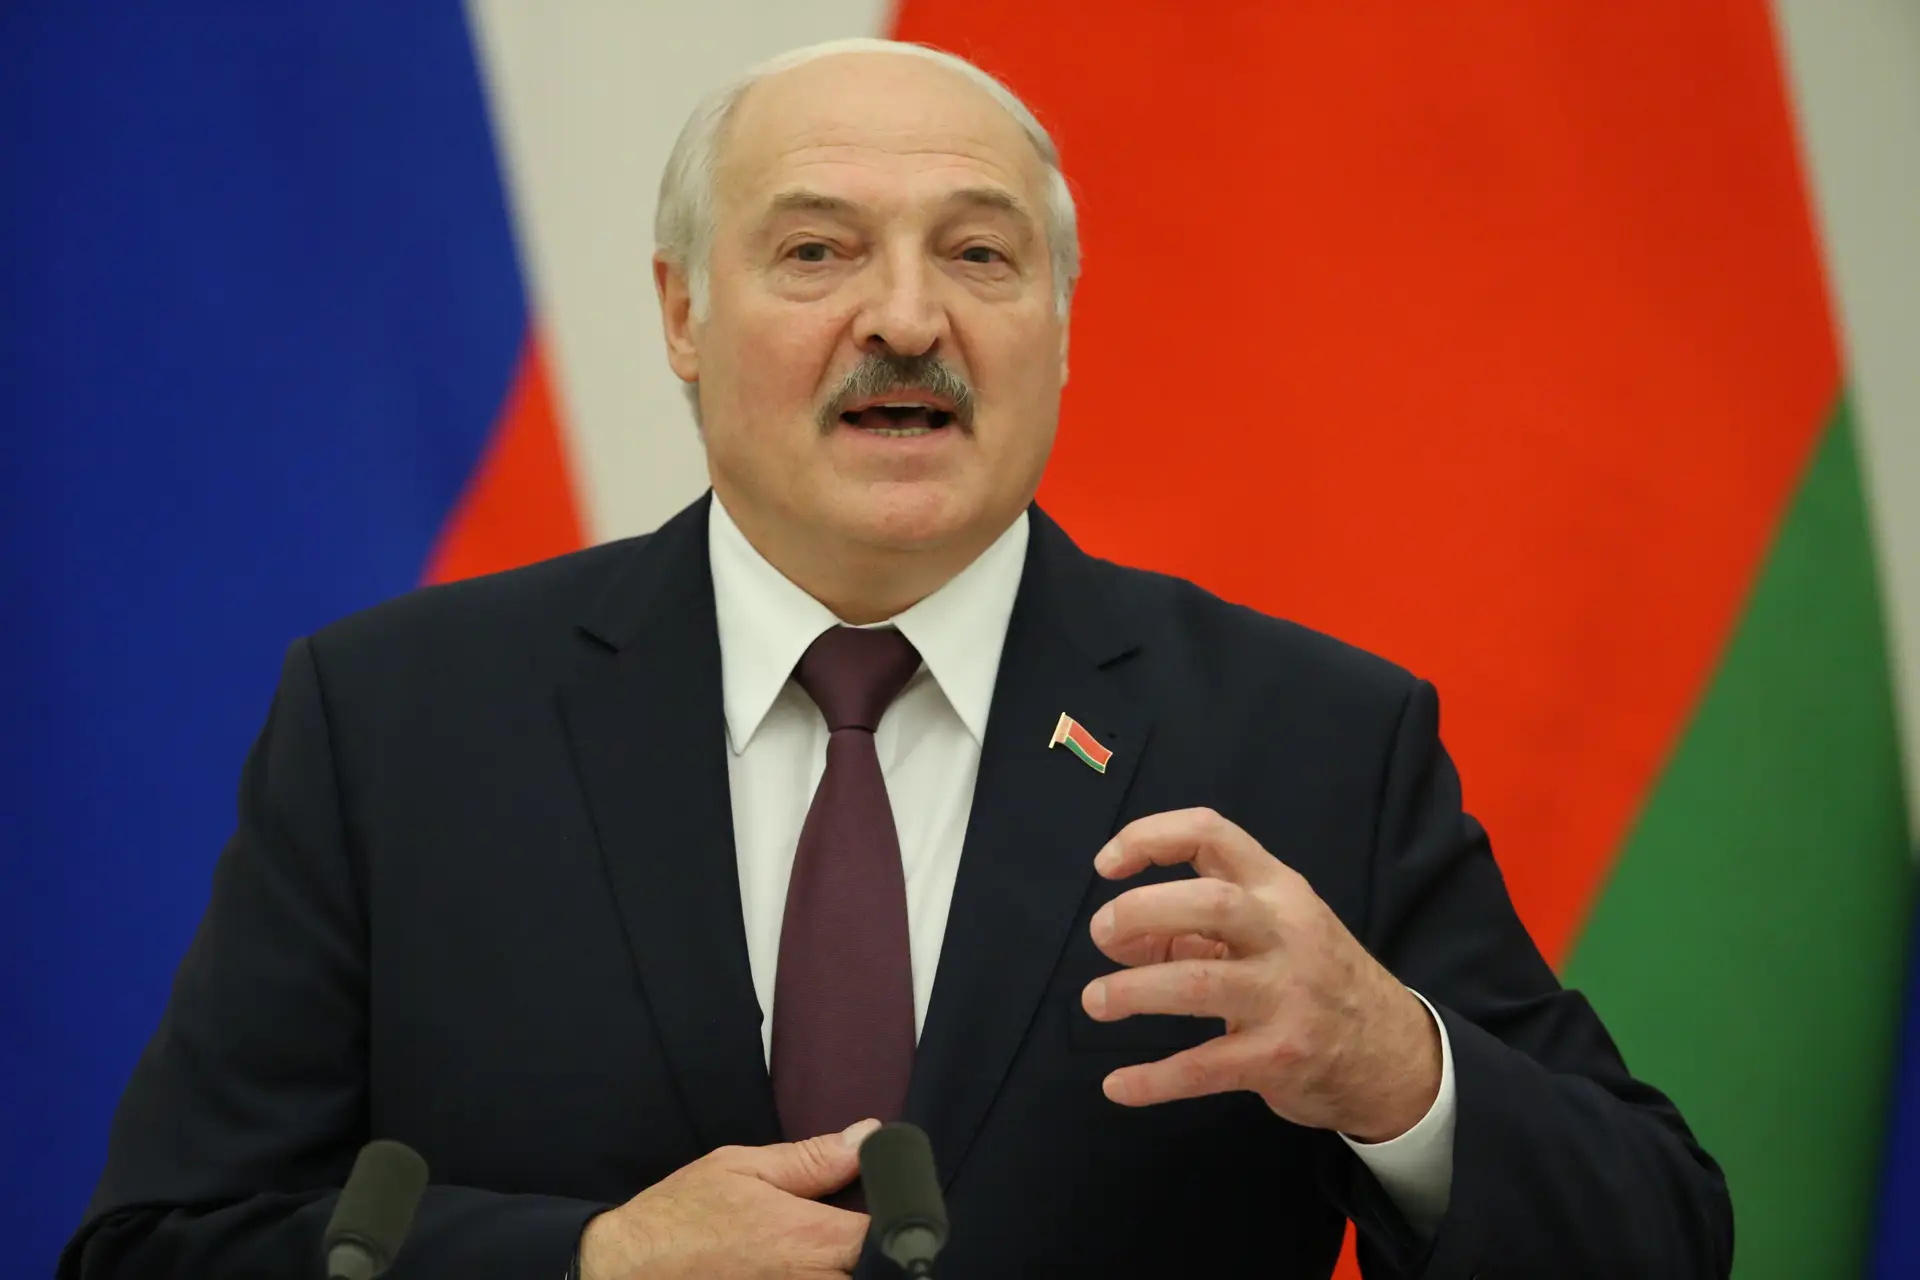 Presidente da Bielorrússia felicita povo ucraniano no Dia da Independência